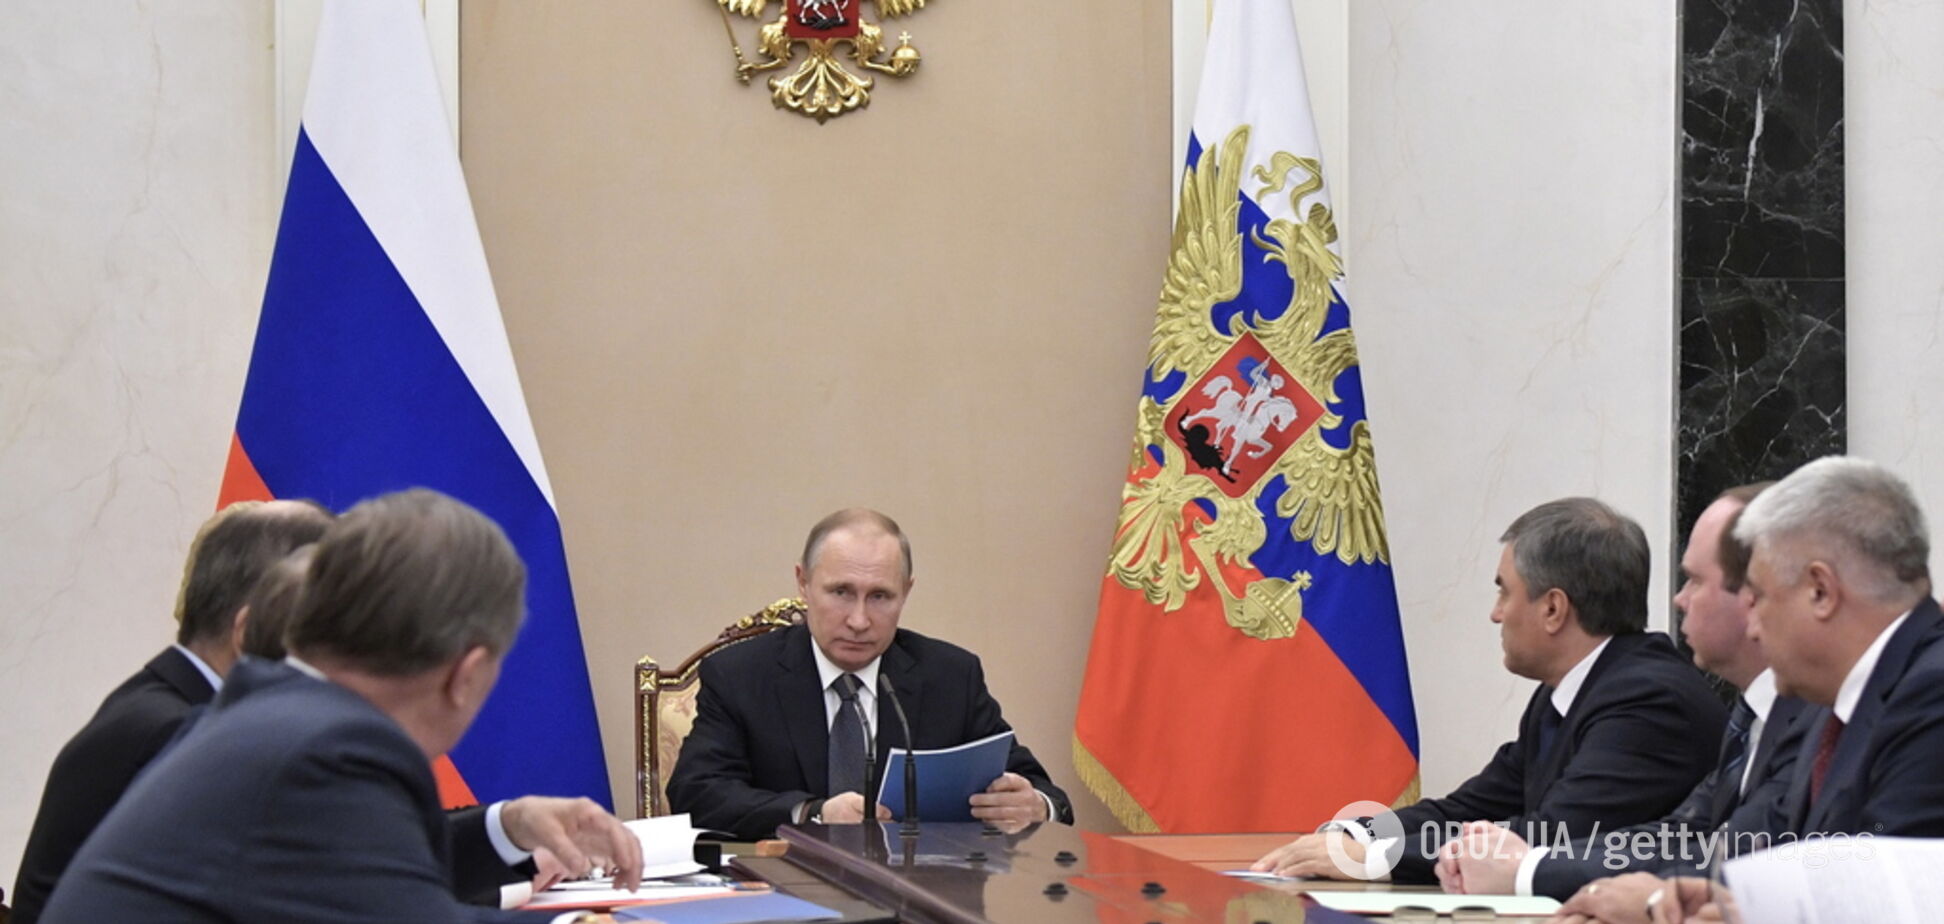 У Путина захотели расширить эмбарго против Запада: в России забили тревогу